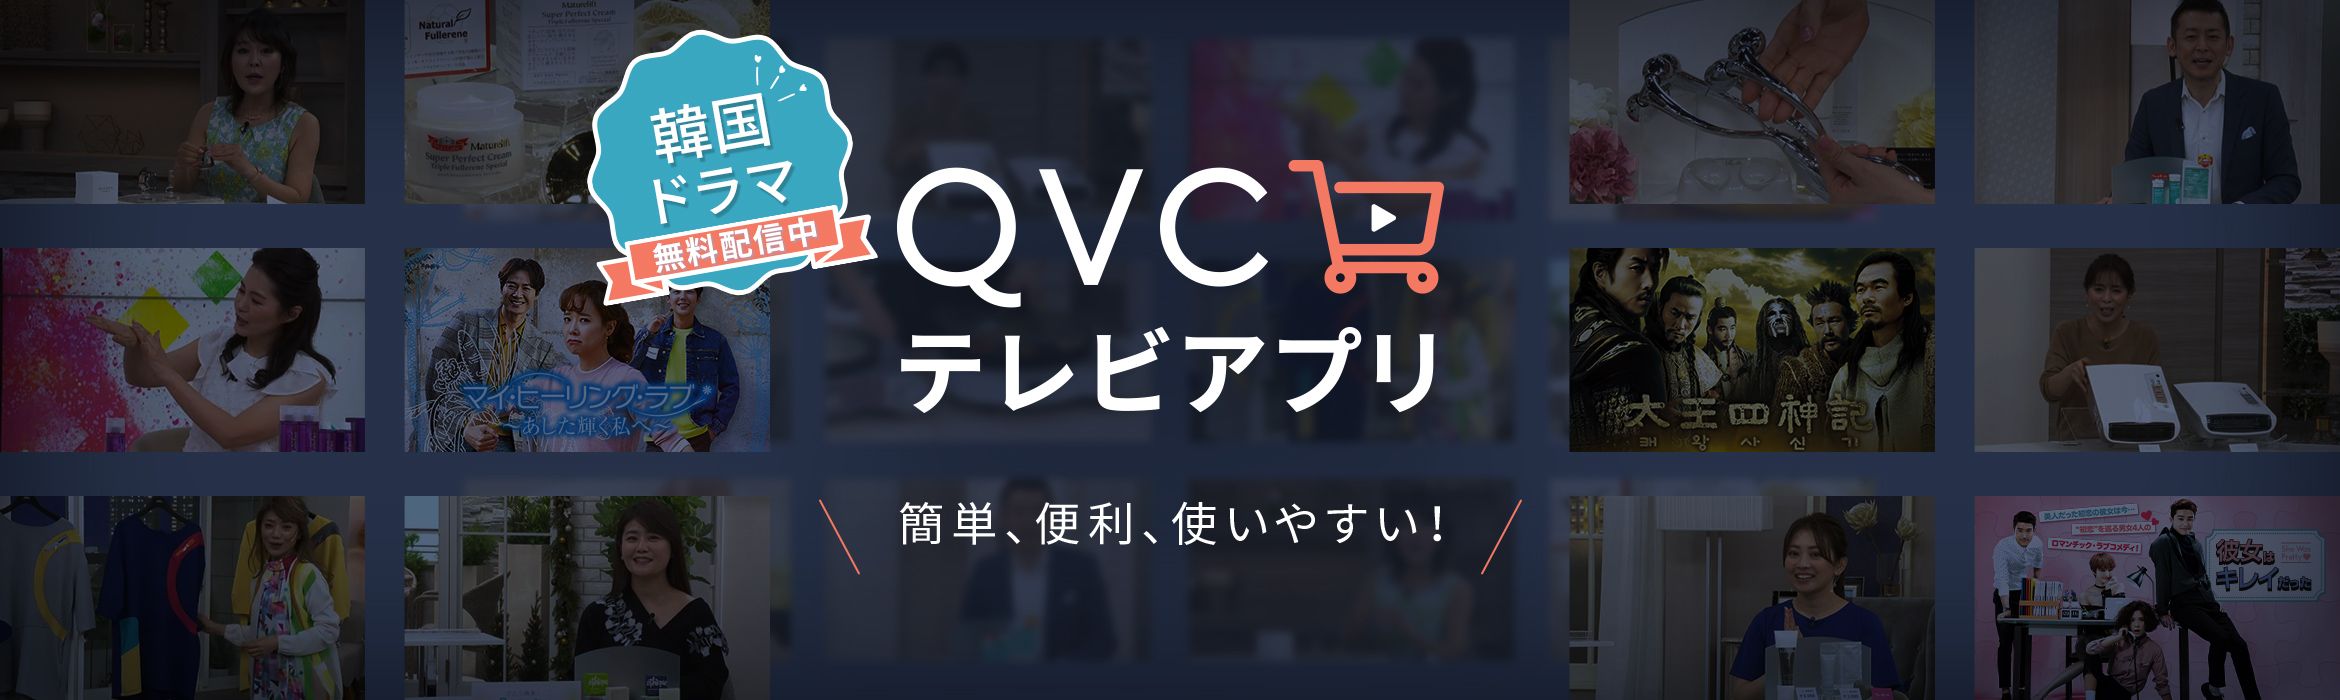 QVCテレビアプリ